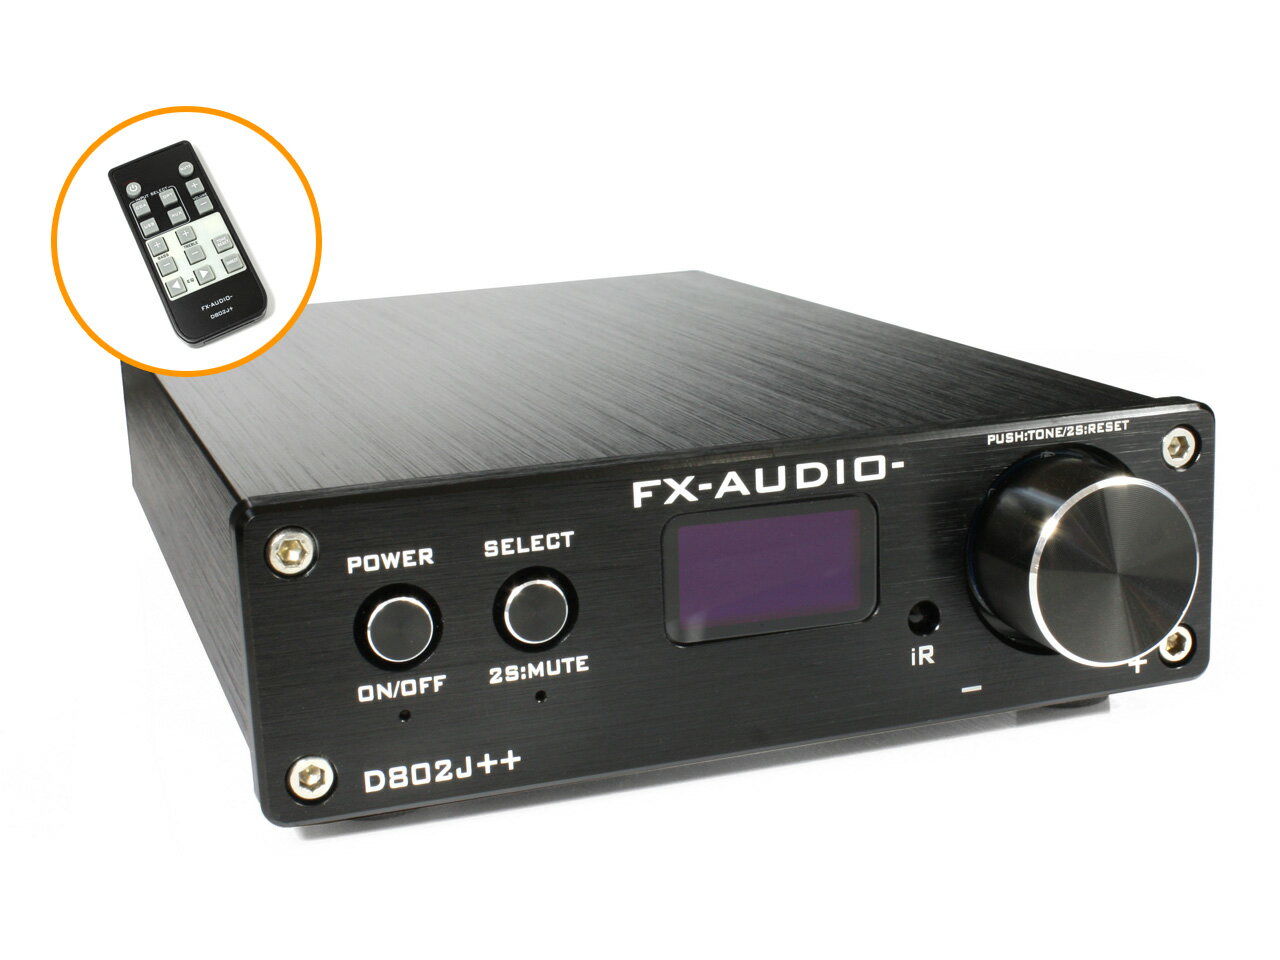 送料無料 FX-AUDIO- D802J++ [ブラック] デジタル3系統24bit/192kHz対応+アナログ1系統入力 STA326搭載 フルデジタルアンプ USB 光 オプティカル 同軸 デジタル